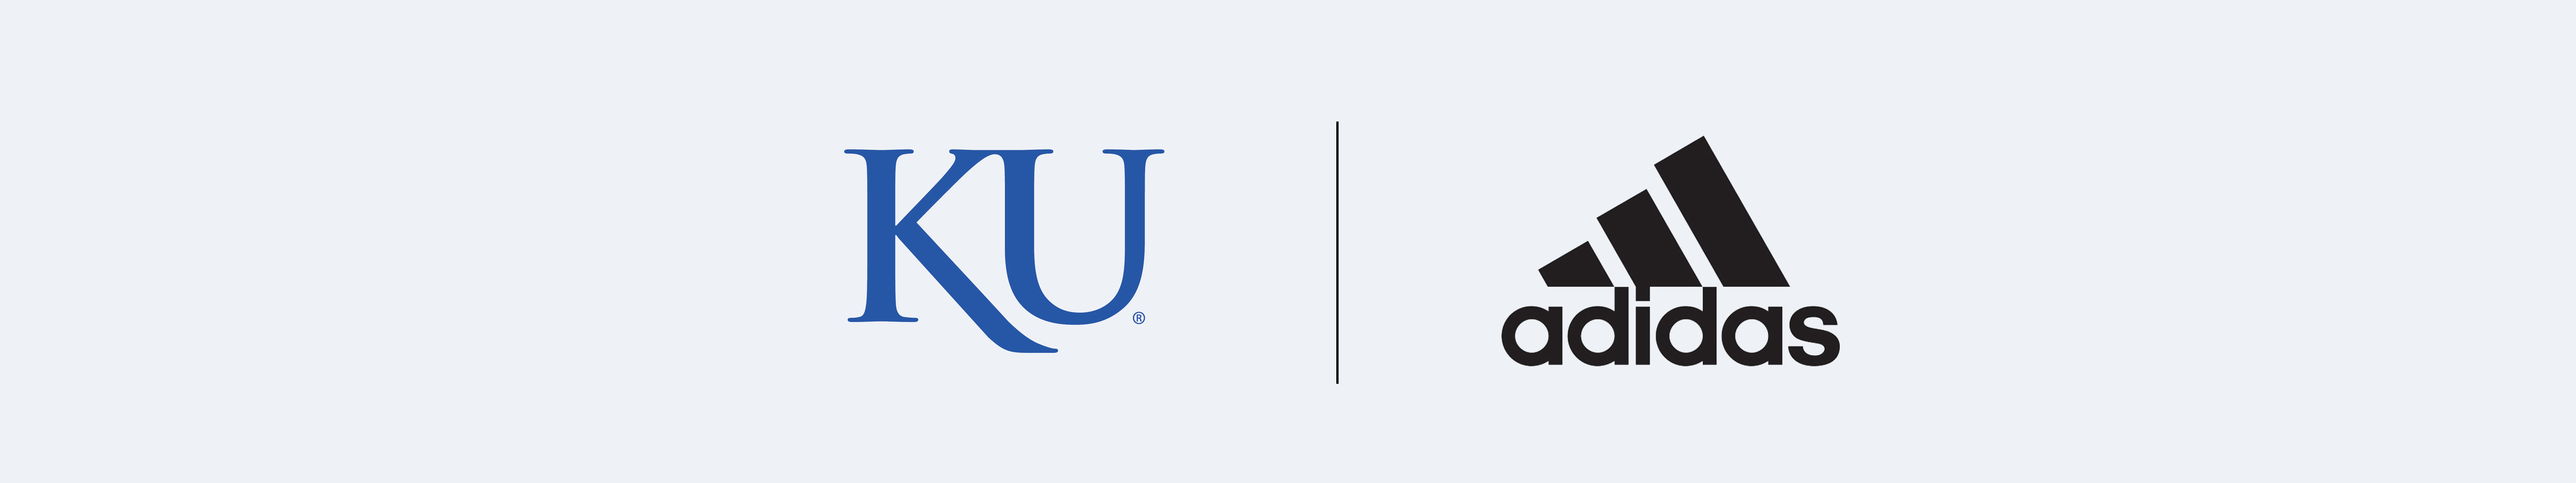 "Example of external co-branding with KU and Adidas using the KU logo."